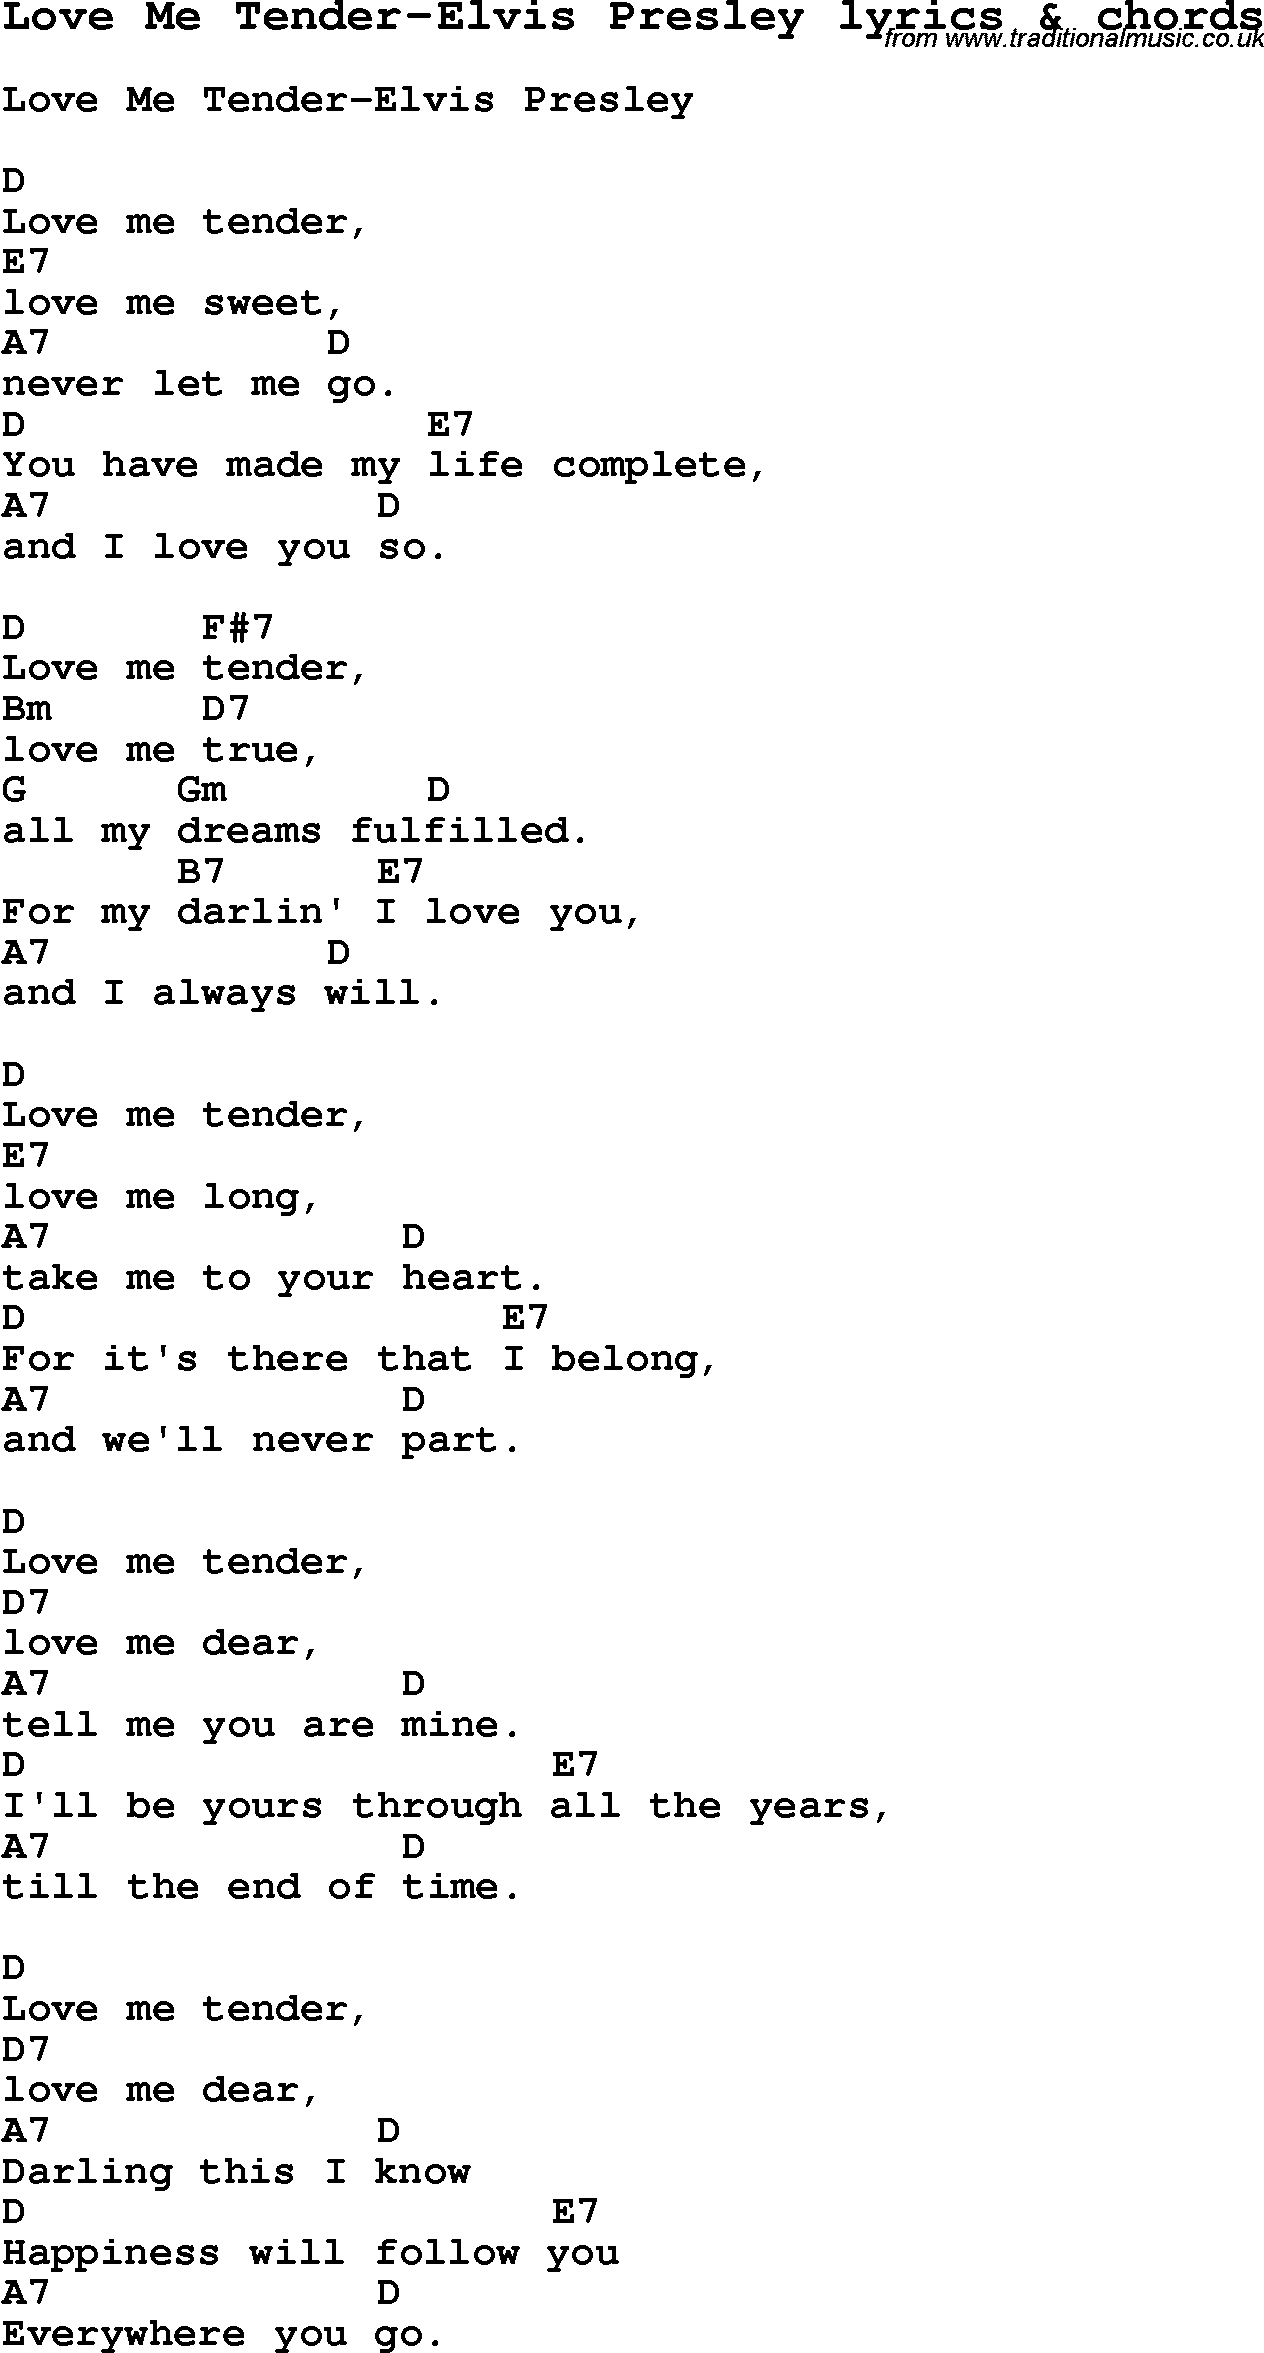 Love Song Lyrics for: Love Me Tender-Elvis Presley with chords for Ukulele, Guitar Banjo etc.